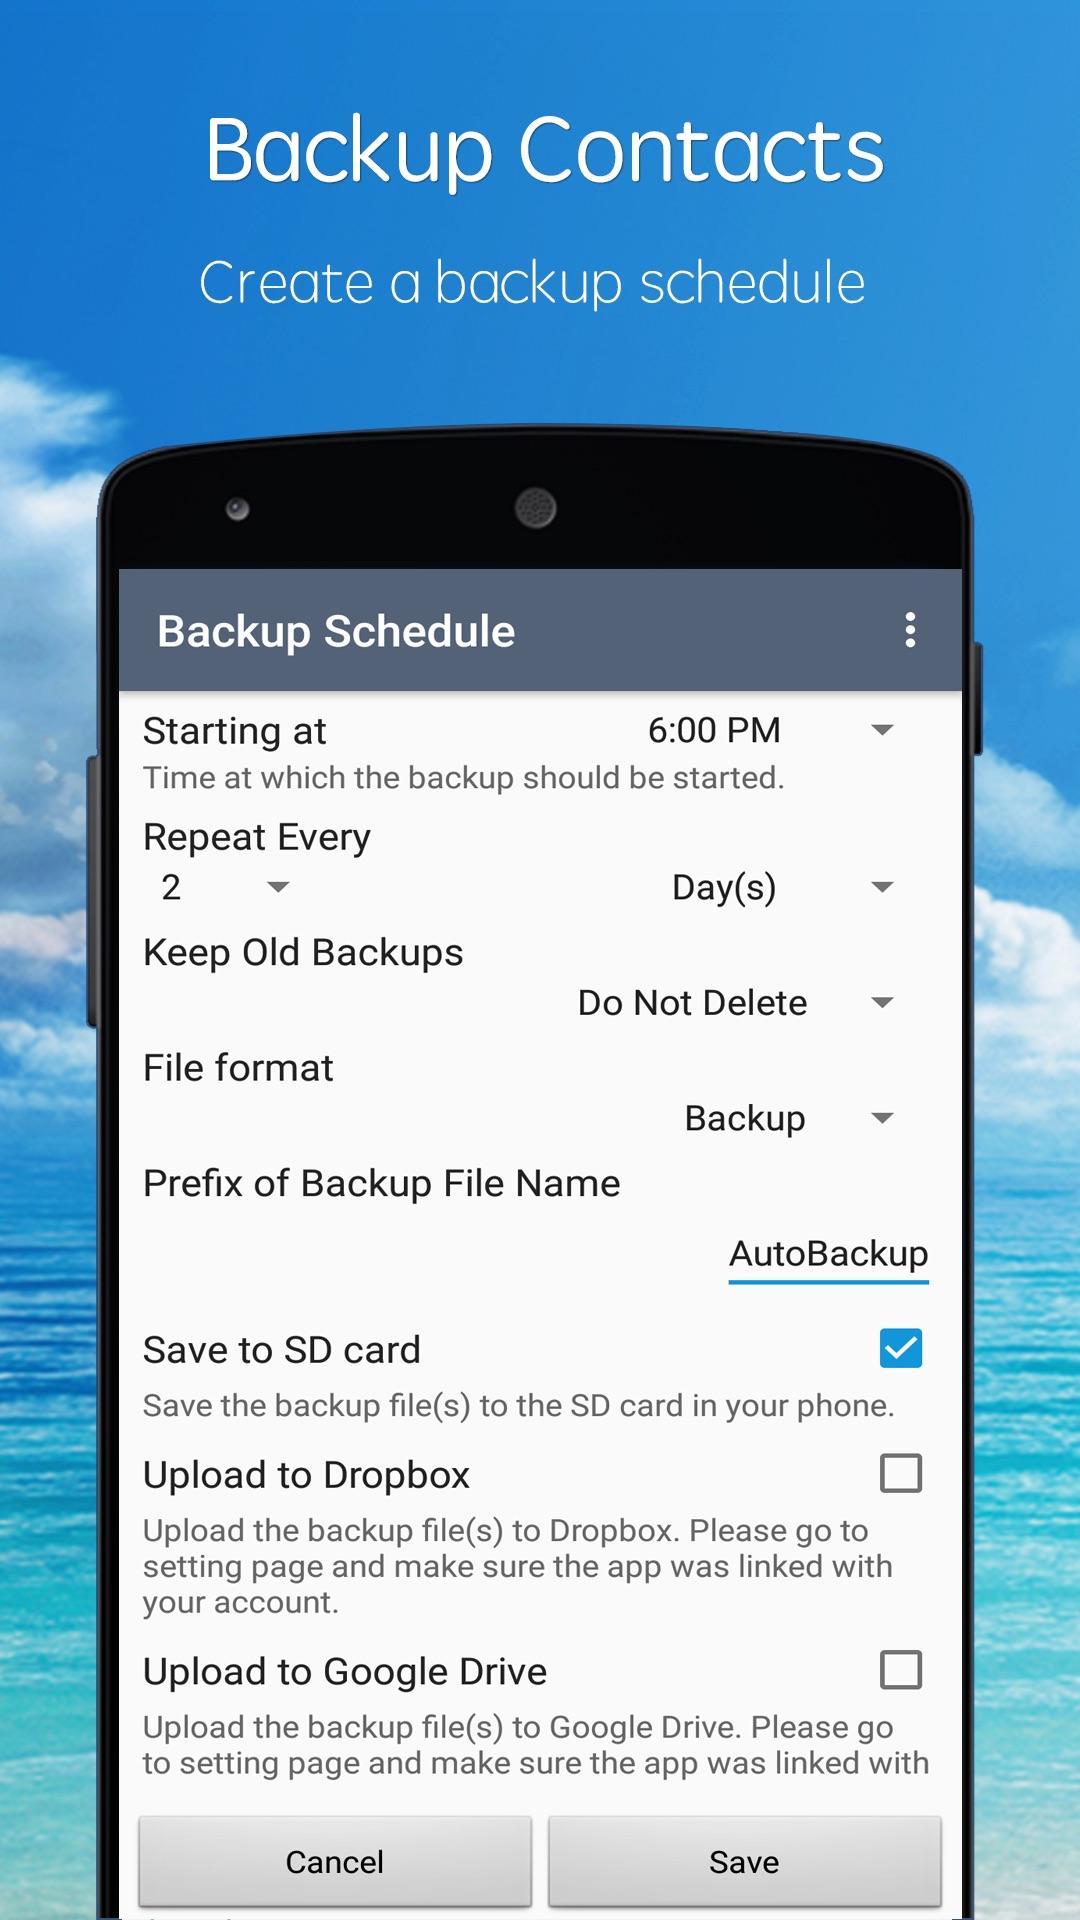 Android application SA Contacts screenshort